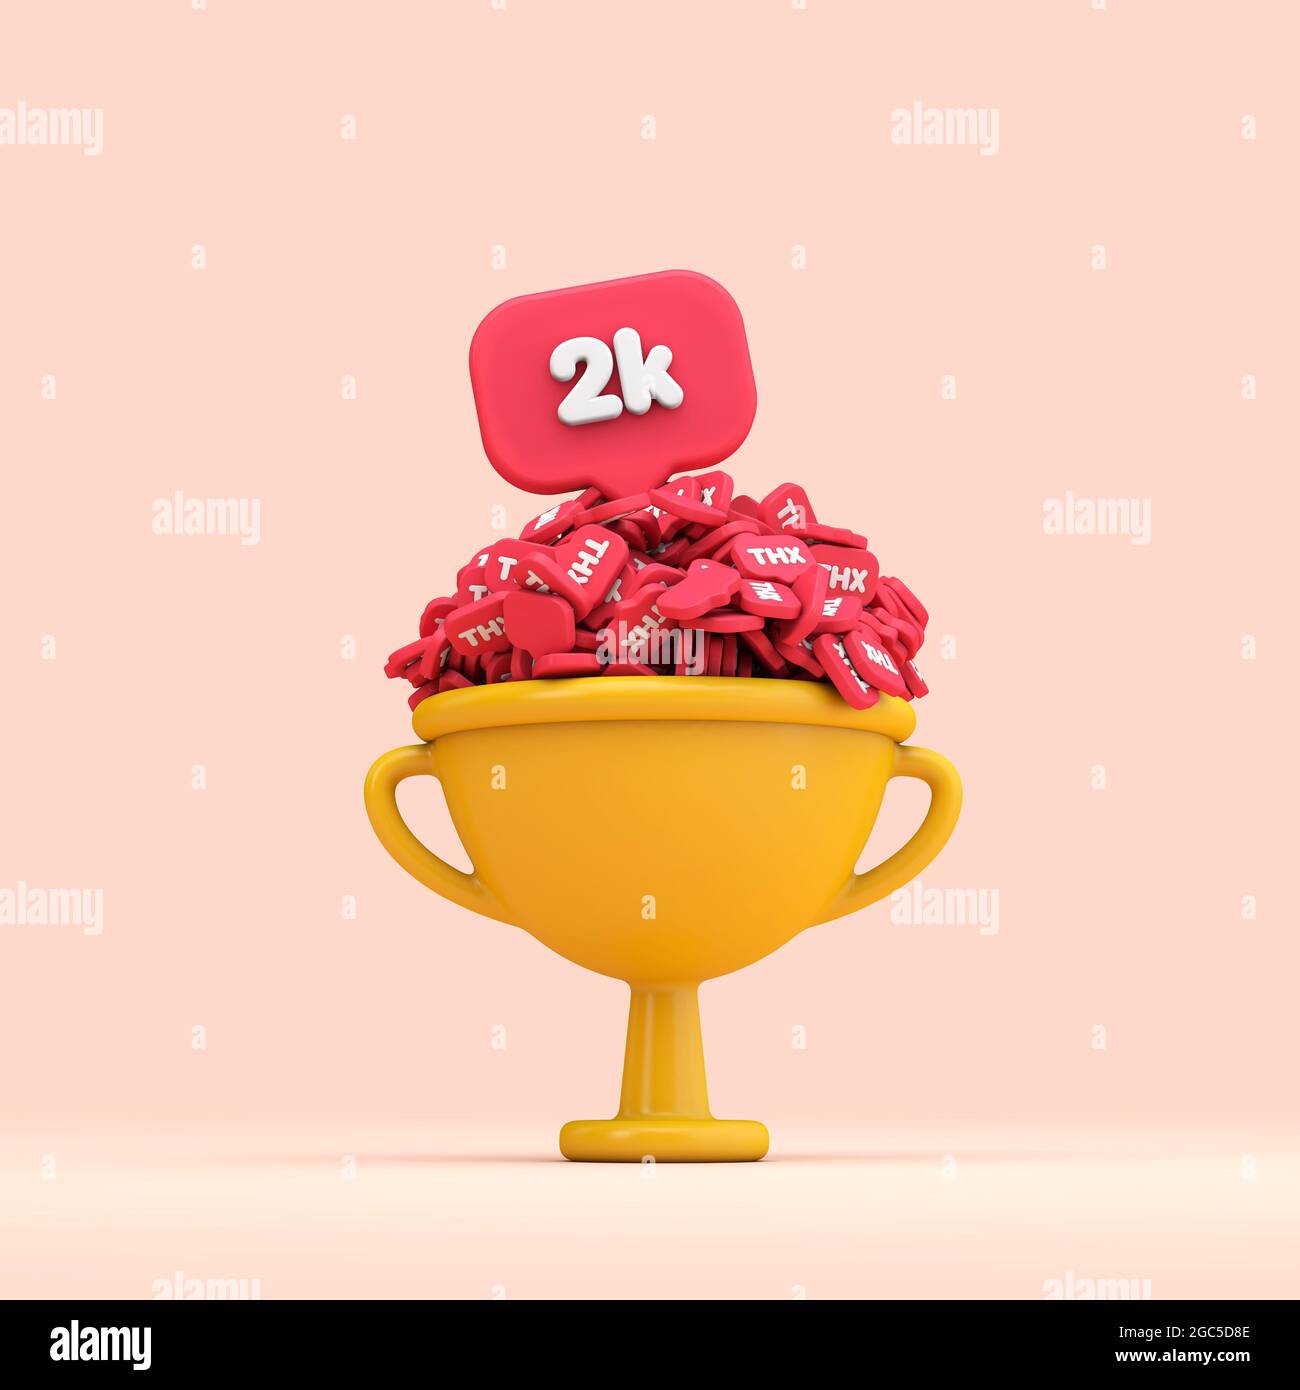 Grazie al trofeo di celebrazione dei seguaci dei social media 2k. Rendering 3D Foto Stock